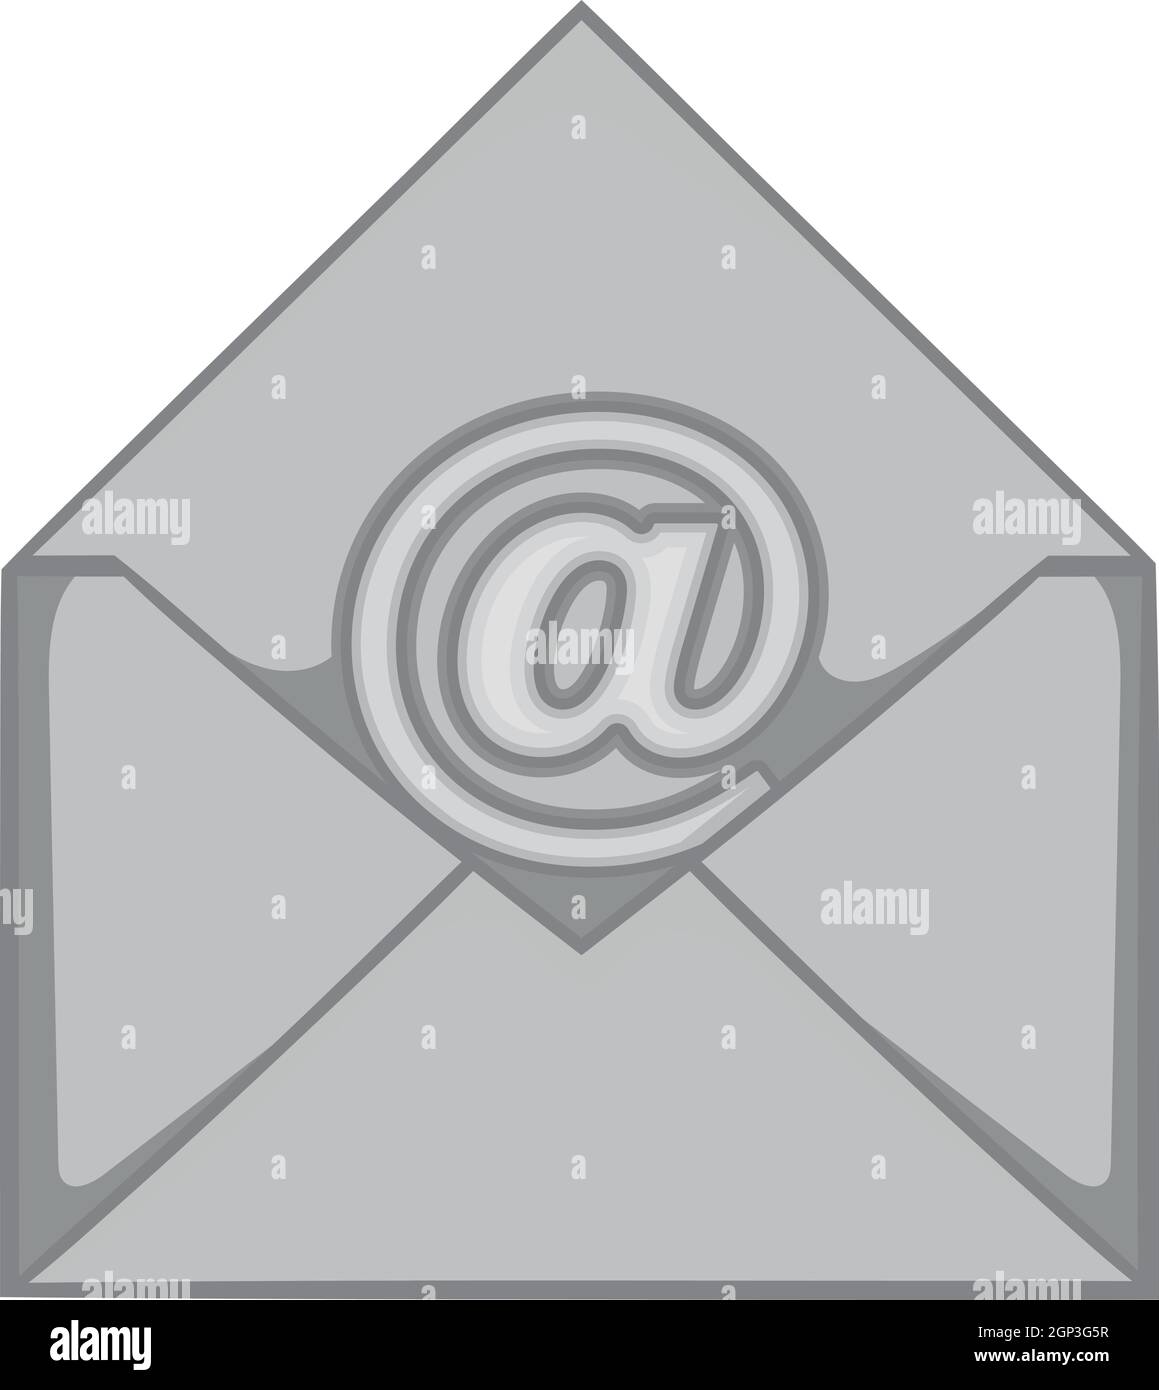 Icona di e-mail, nero stile monocromatico Illustrazione Vettoriale